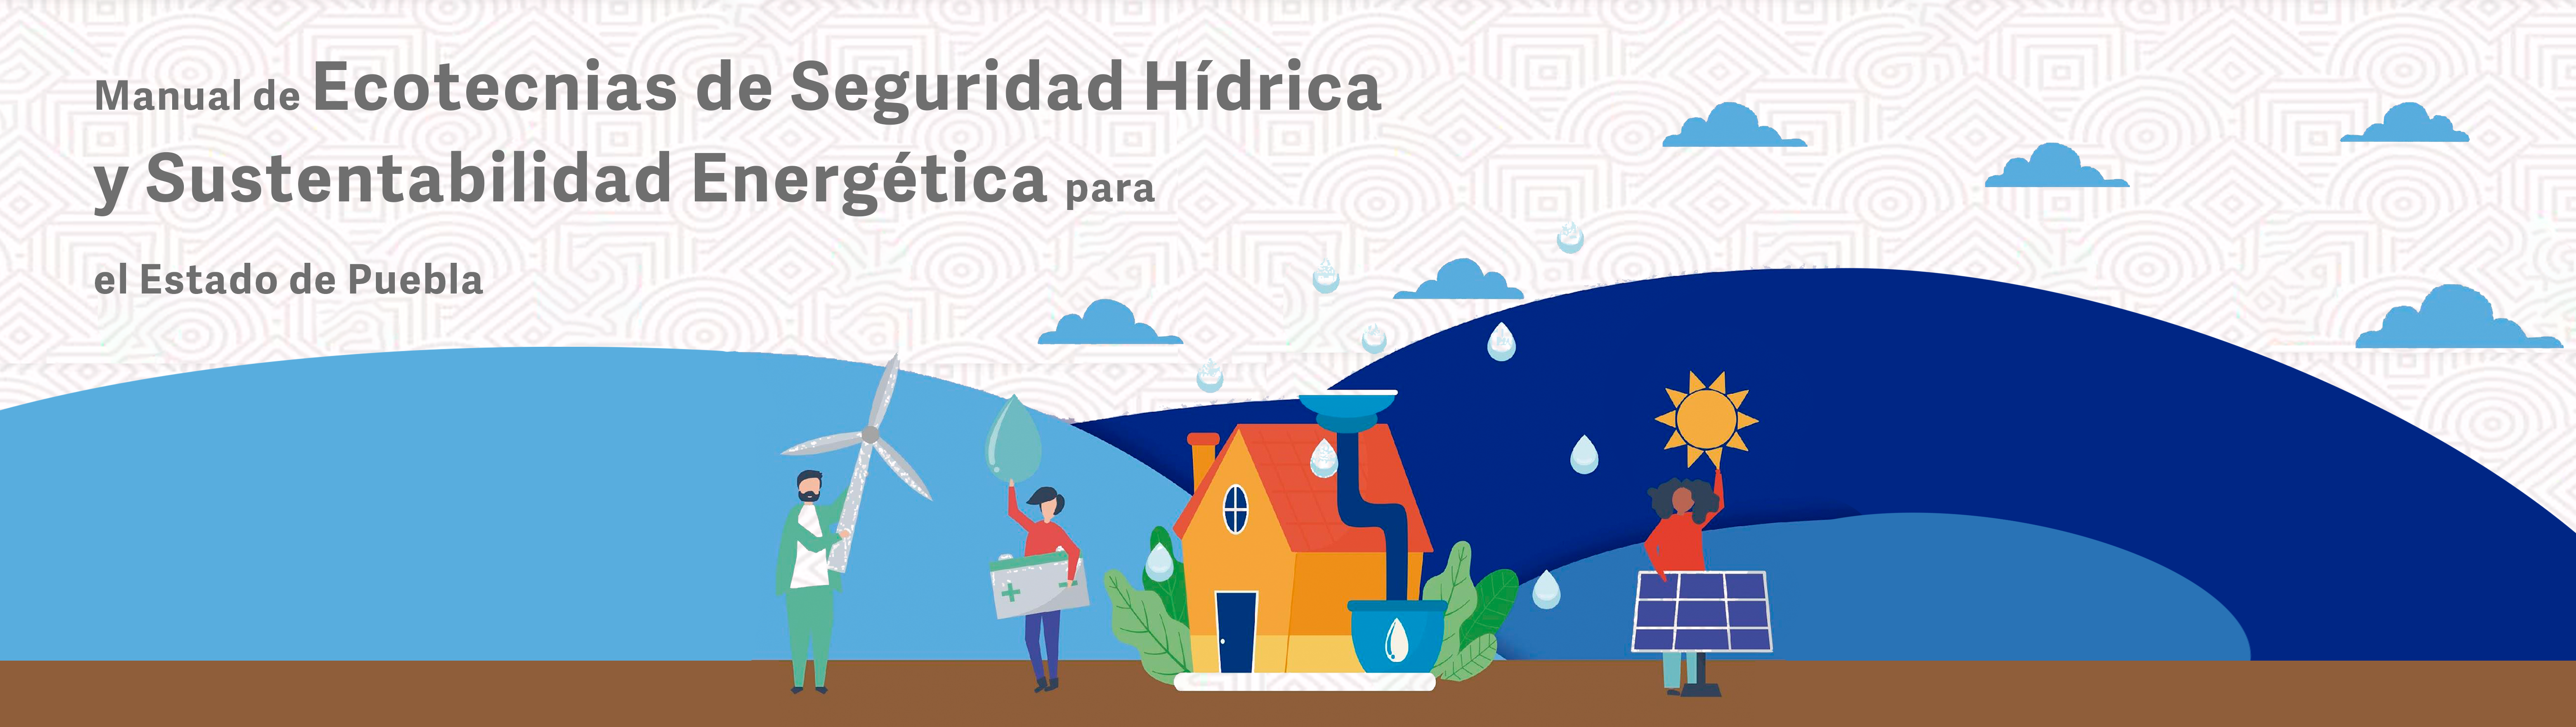 Manual de Ecotecnias de Seguridad Hídrica y Sustentabilidad Energética para el Estado de Puebla